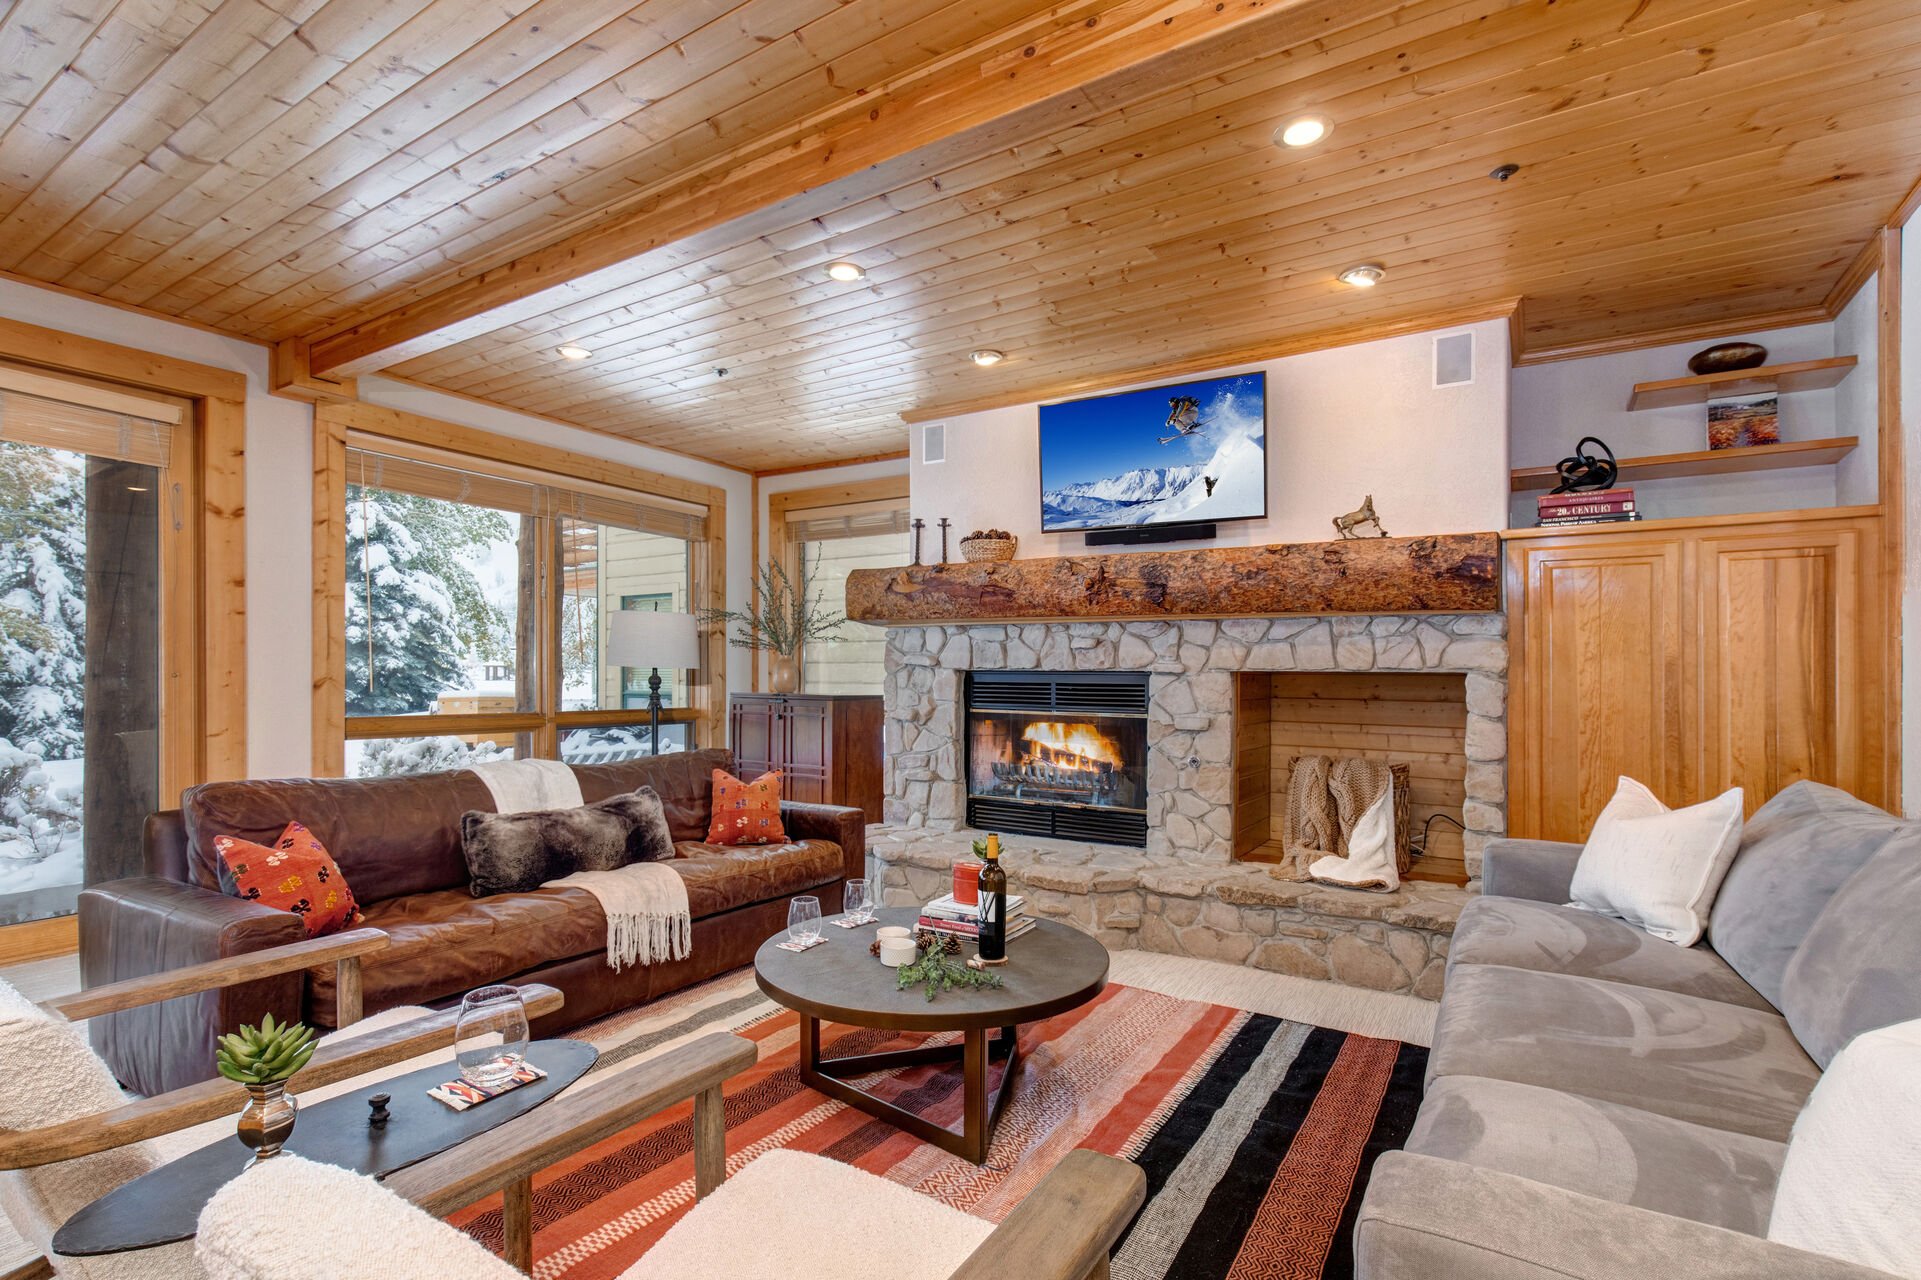 Living Room with abundant plush furnishings, sofa bed, wood burning fireplace, 50